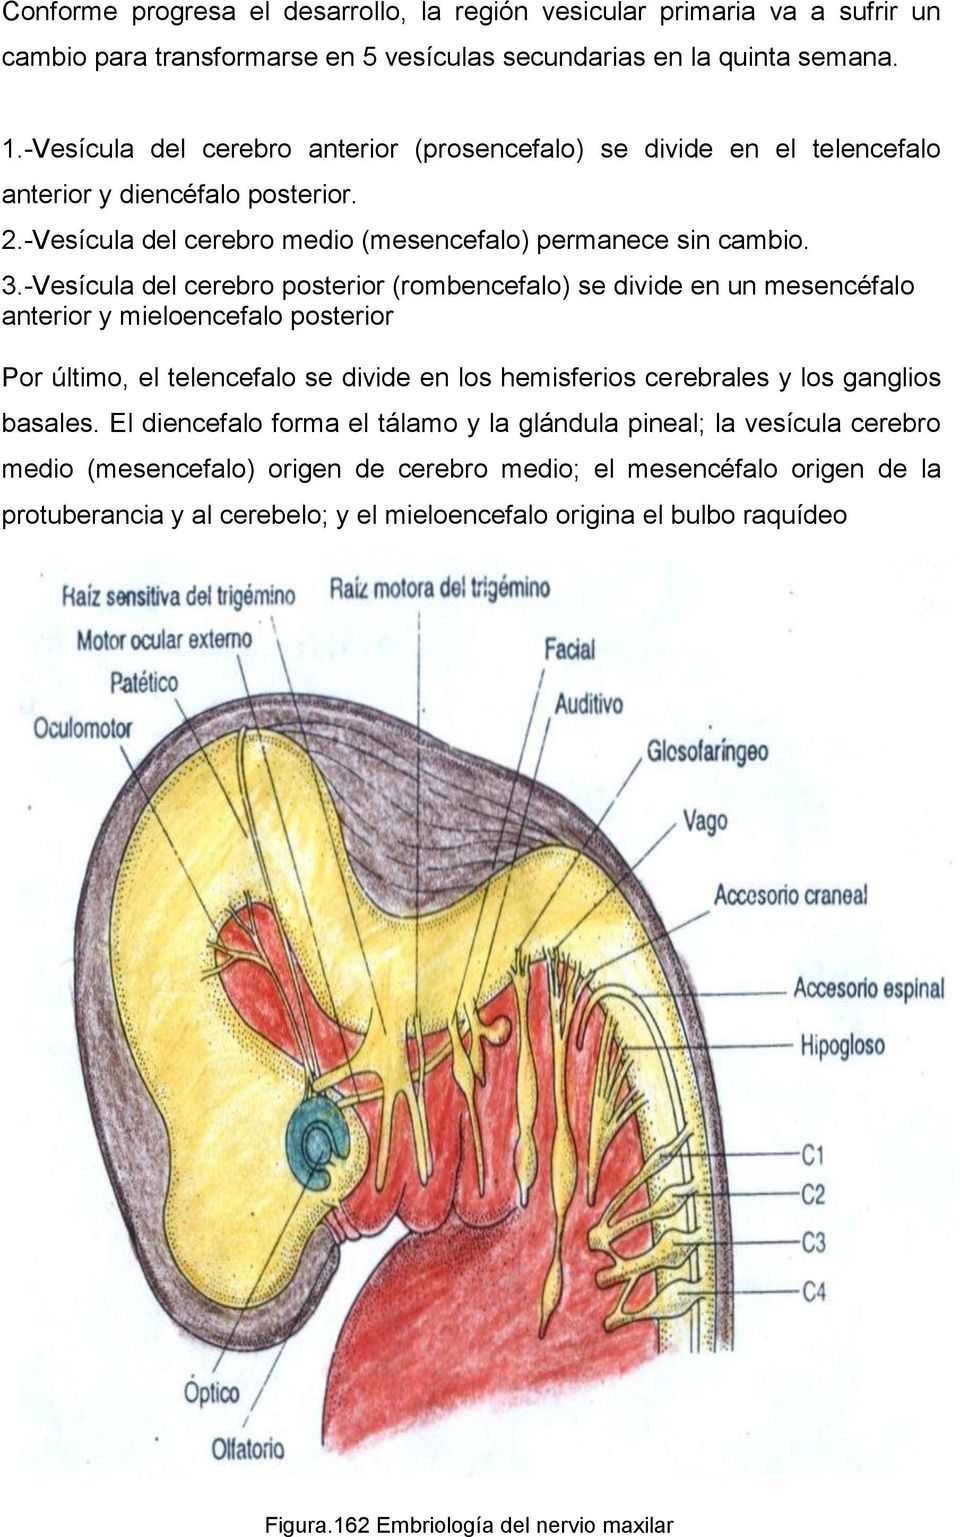 -Vesícula del cerebro posterior (rombencefalo) se divide en un mesencéfalo anterior y mieloencefalo posterior Por último, el telencefalo se divide en los hemisferios cerebrales y los ganglios